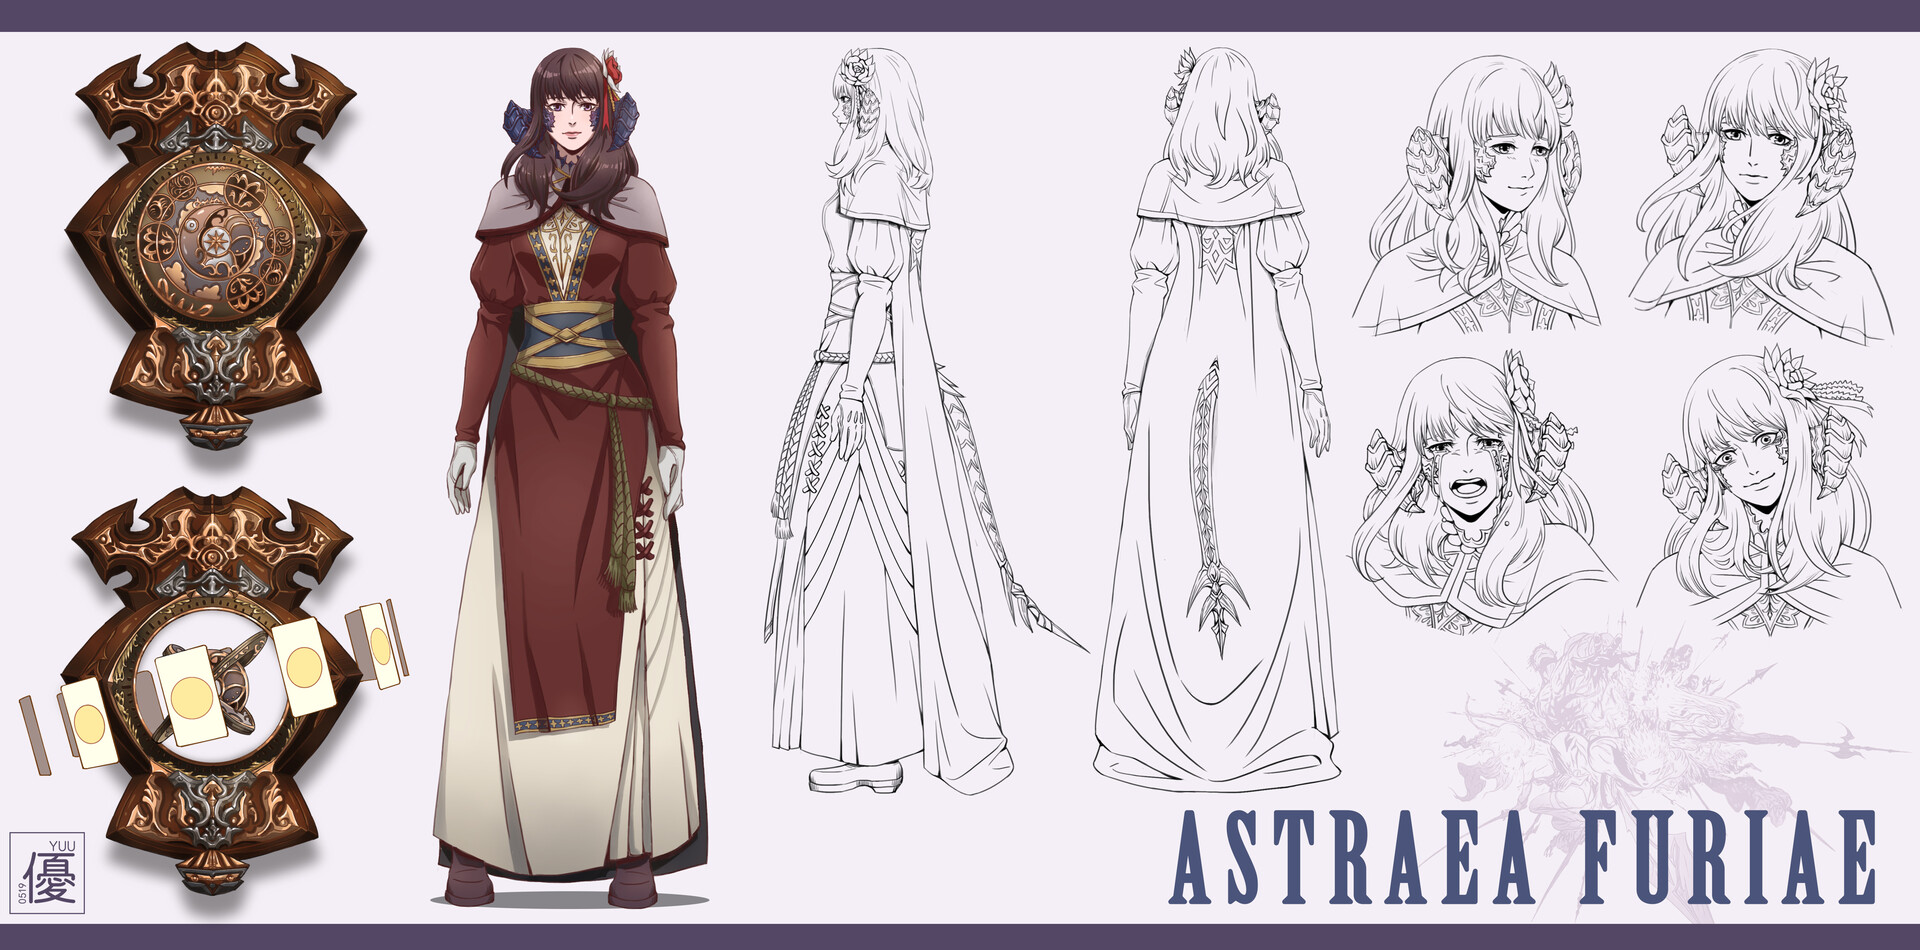 ArtStation - Anime Style Character Sheet // Design